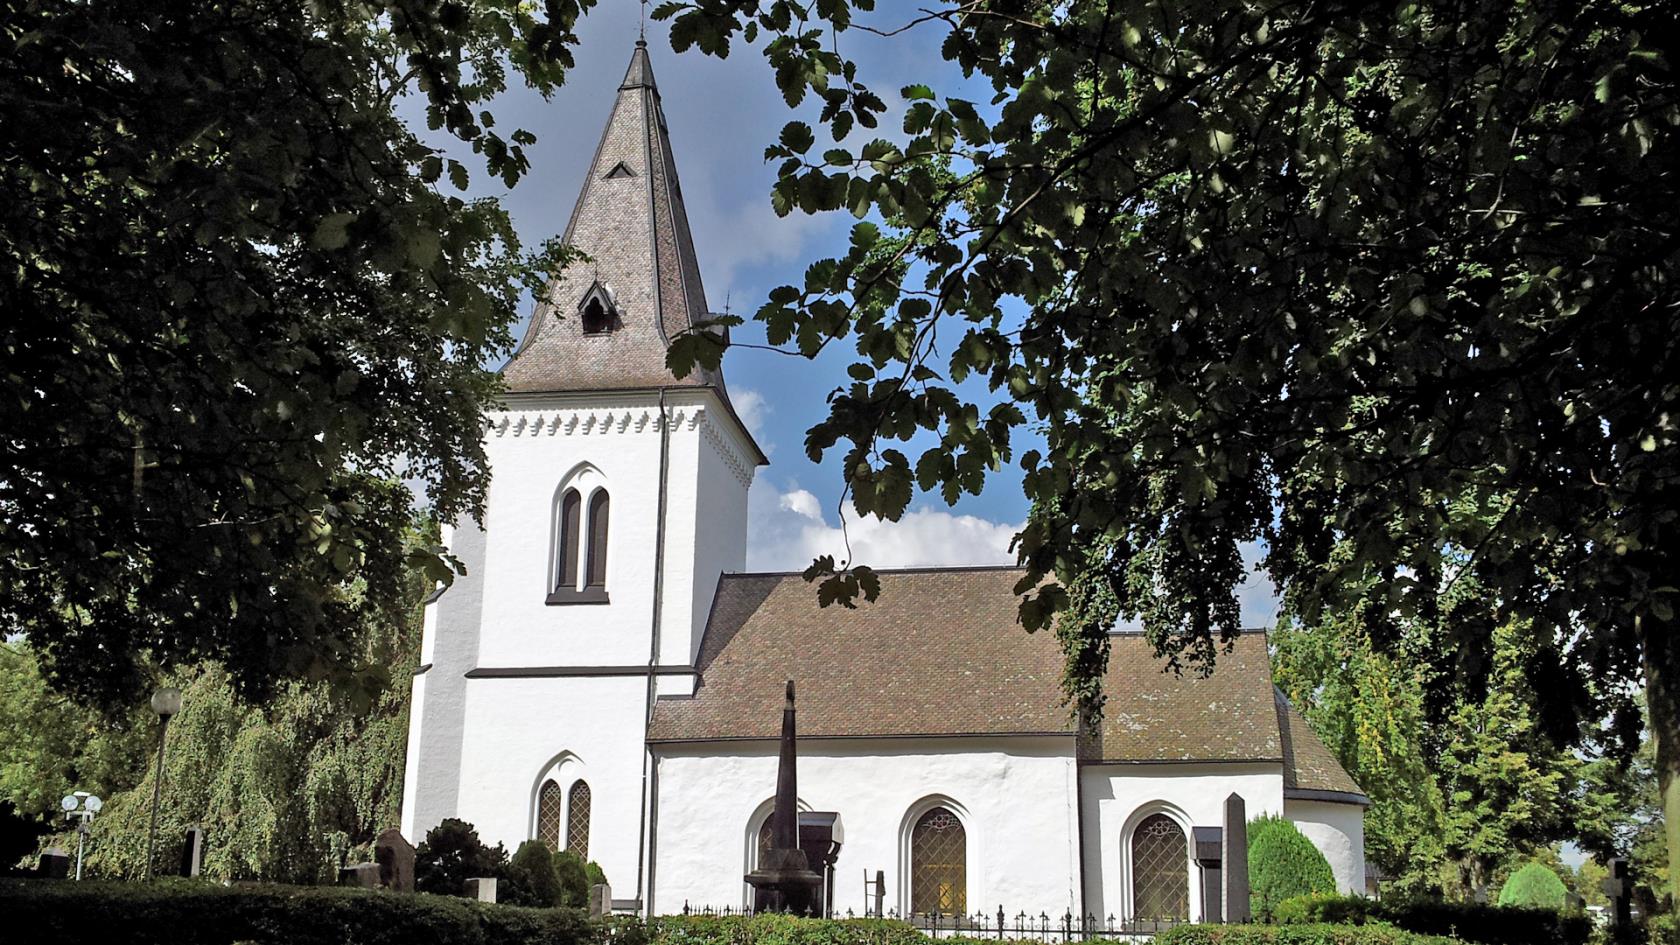 Brågarps kyrka genom sommargrönskan 2014